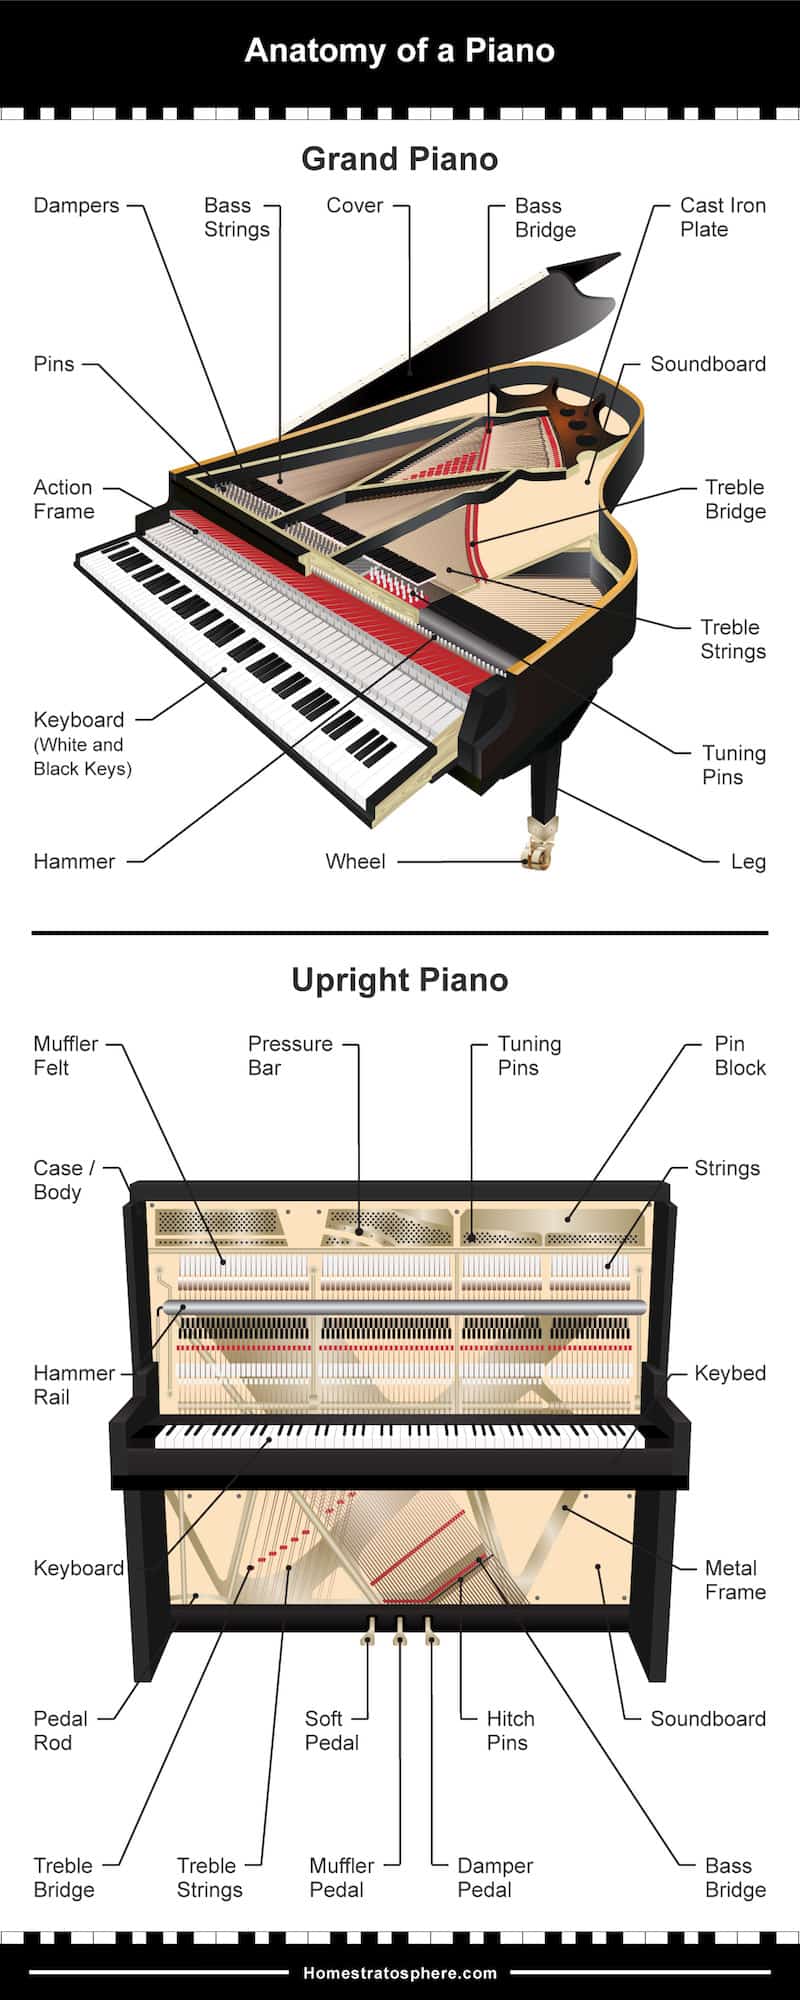 显示钢琴外部和内部部件的两张图表